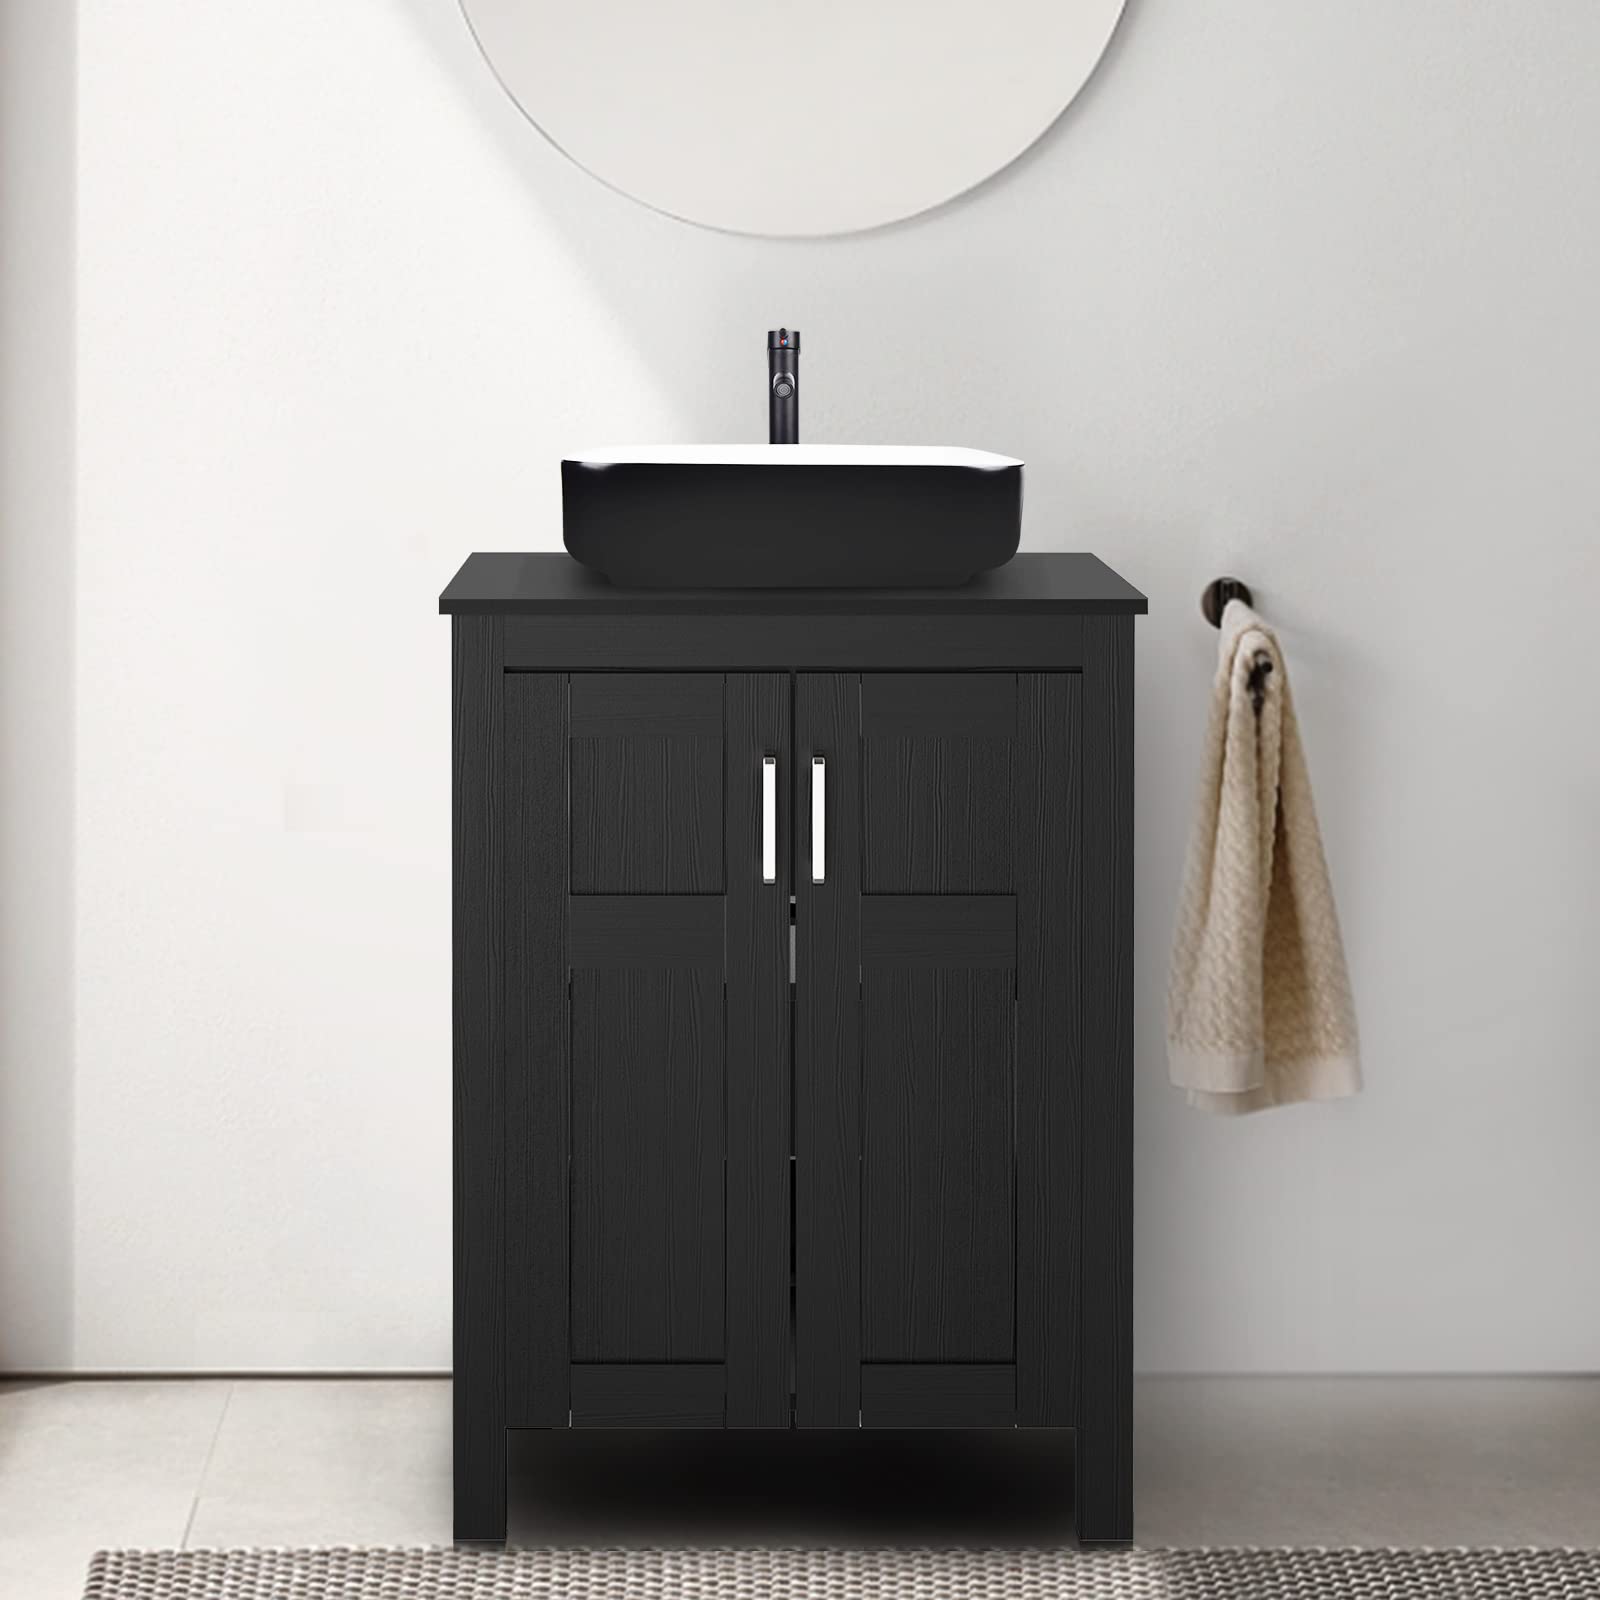 Black Bathroom Vanity Set with Black Ceramic Vessel Sink HW1120 display scene